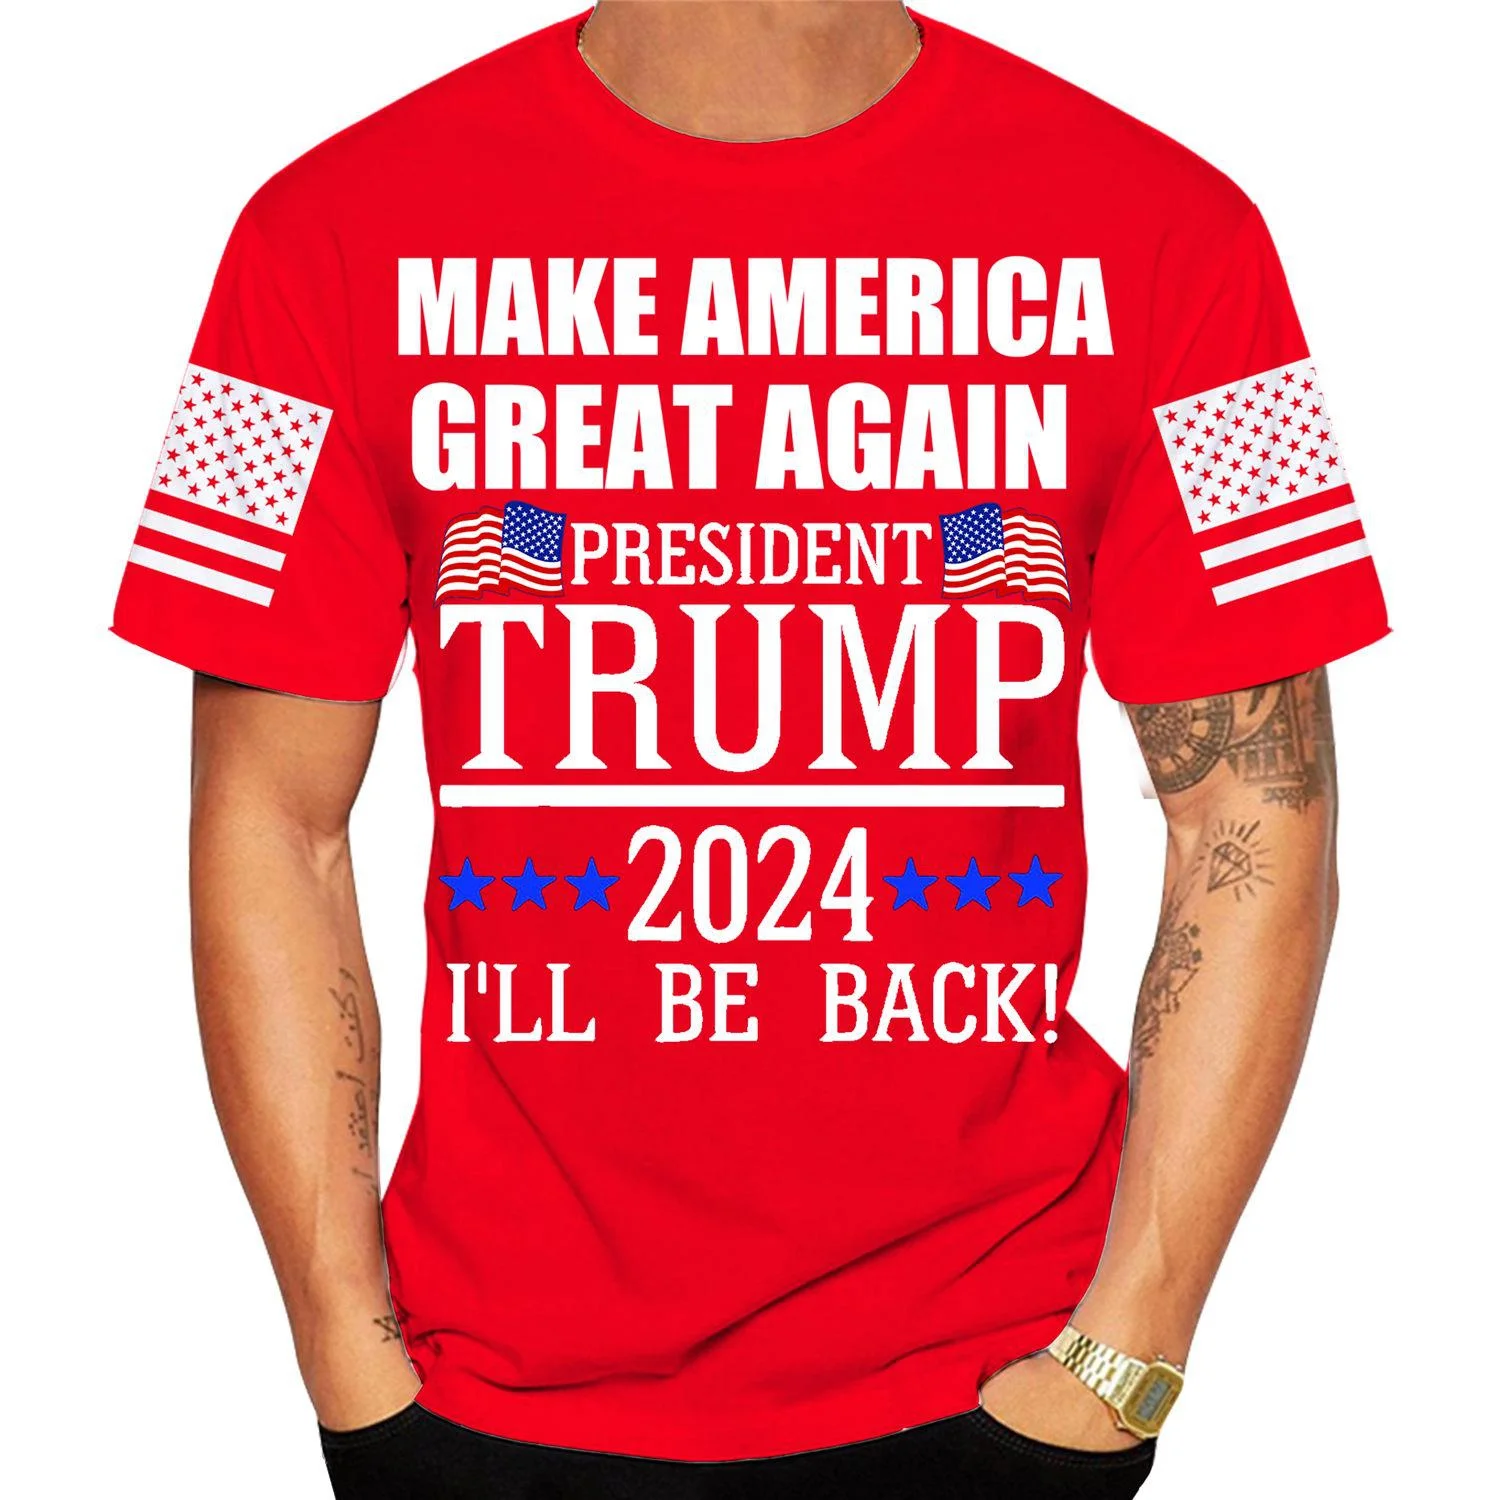 

Новая мода 2024 футболки с 3D принтом Дональда Трампа для мужчин Забавный Трамп делает Америку великолепной снова Трампа топ с коротким рукаво...